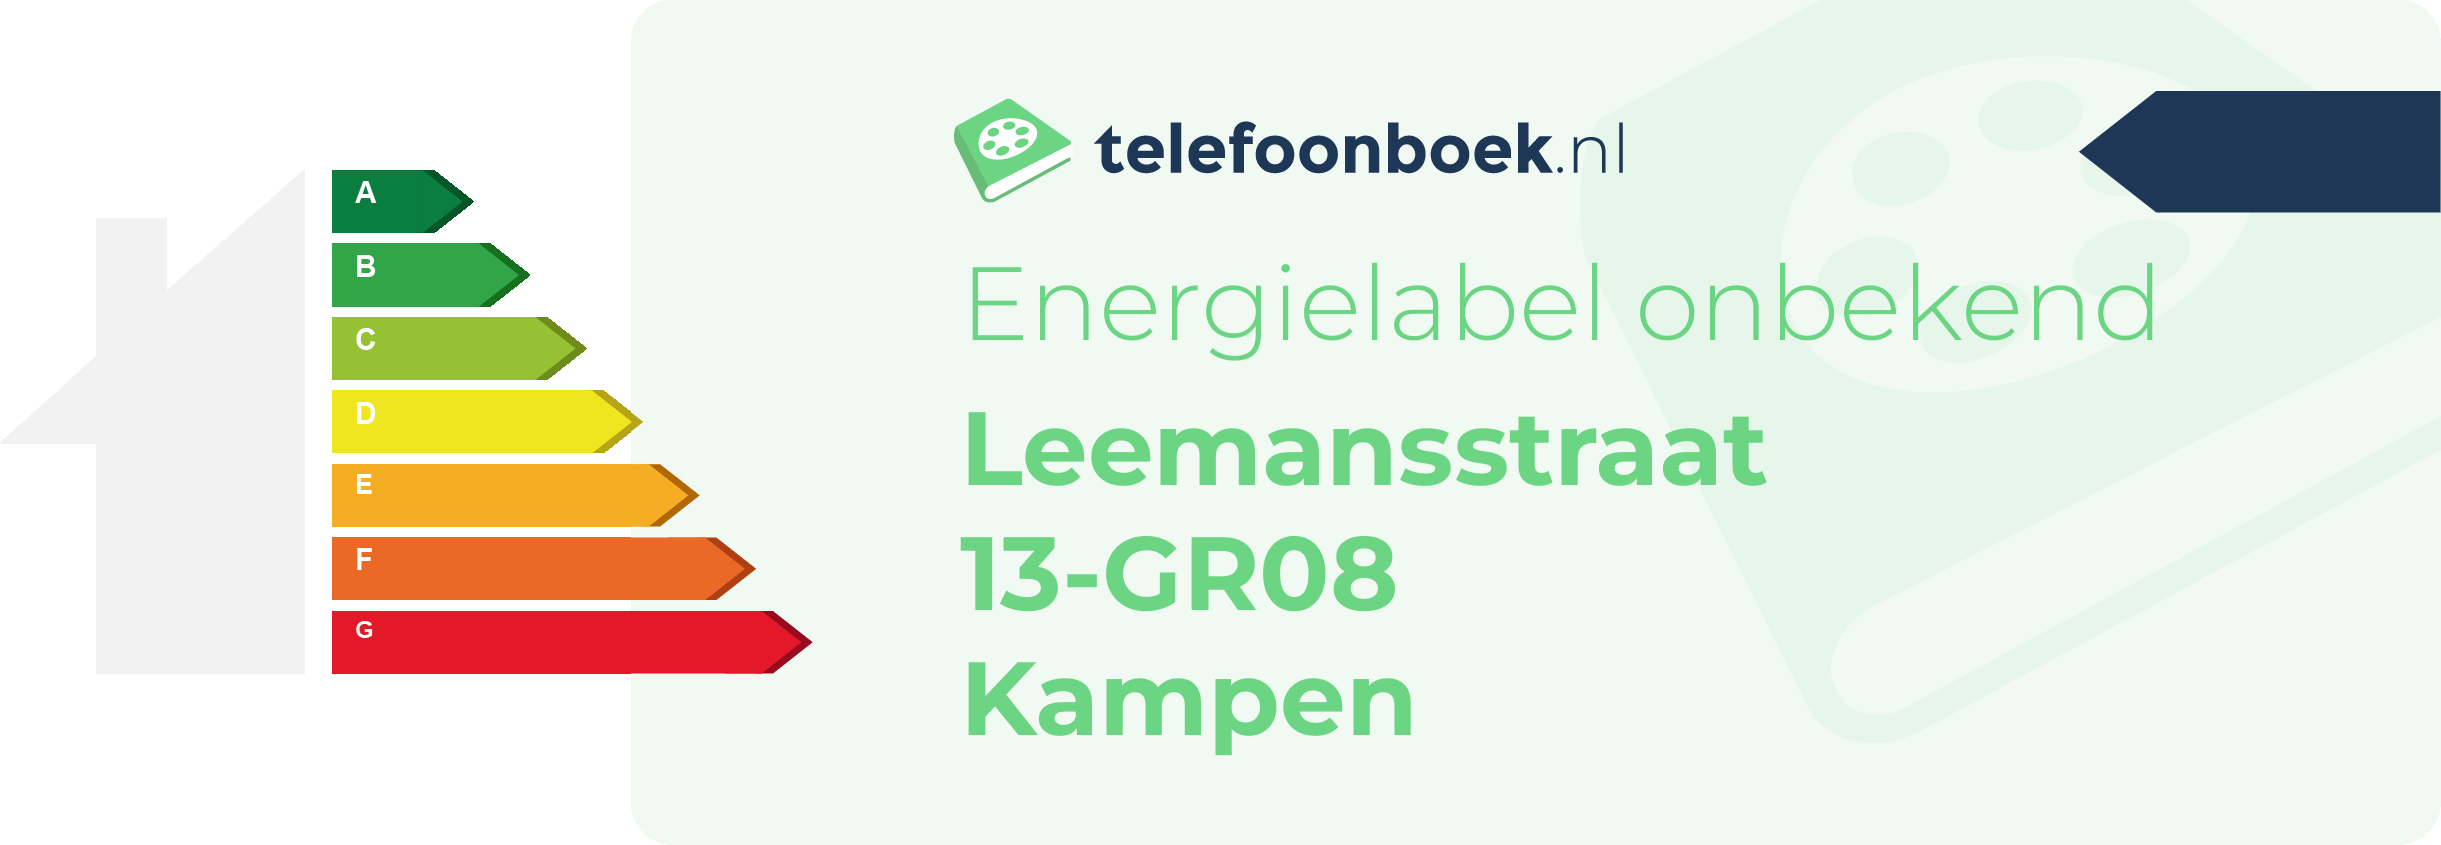 Energielabel Leemansstraat 13-GR08 Kampen